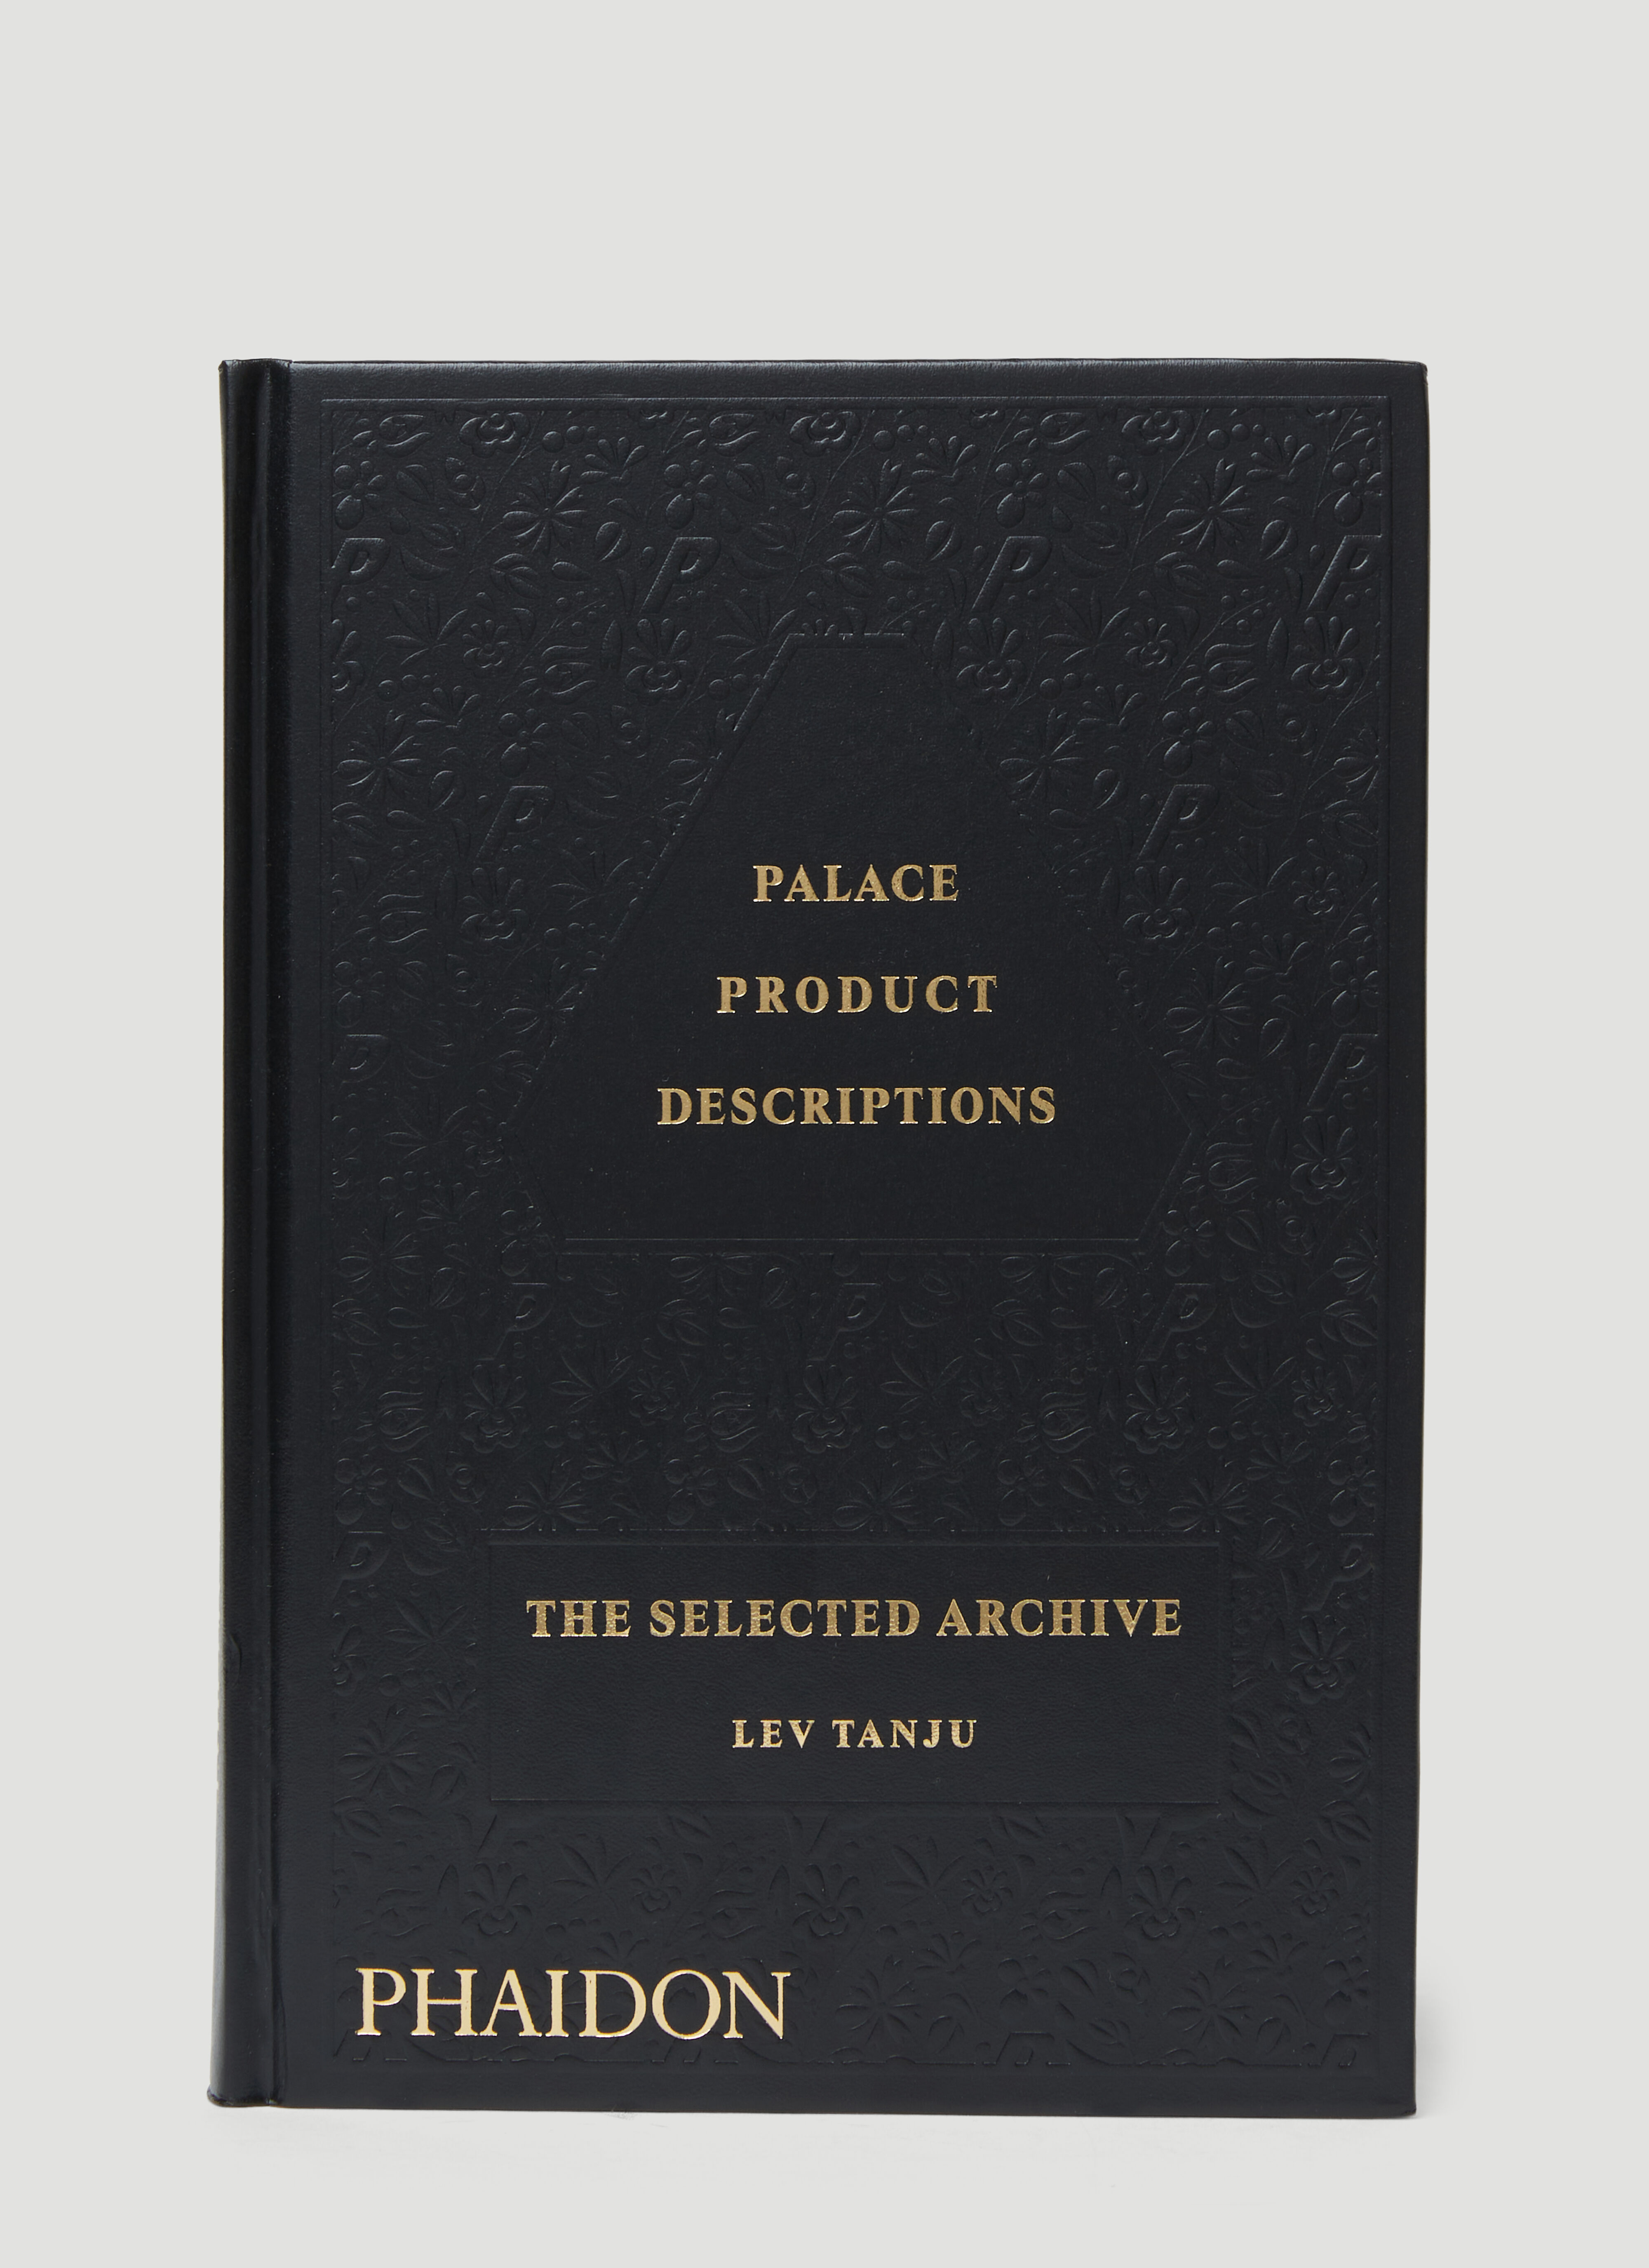 Phaidon Palace 제품 설명: 셀렉티드 아카이브 베이지 phd0553013